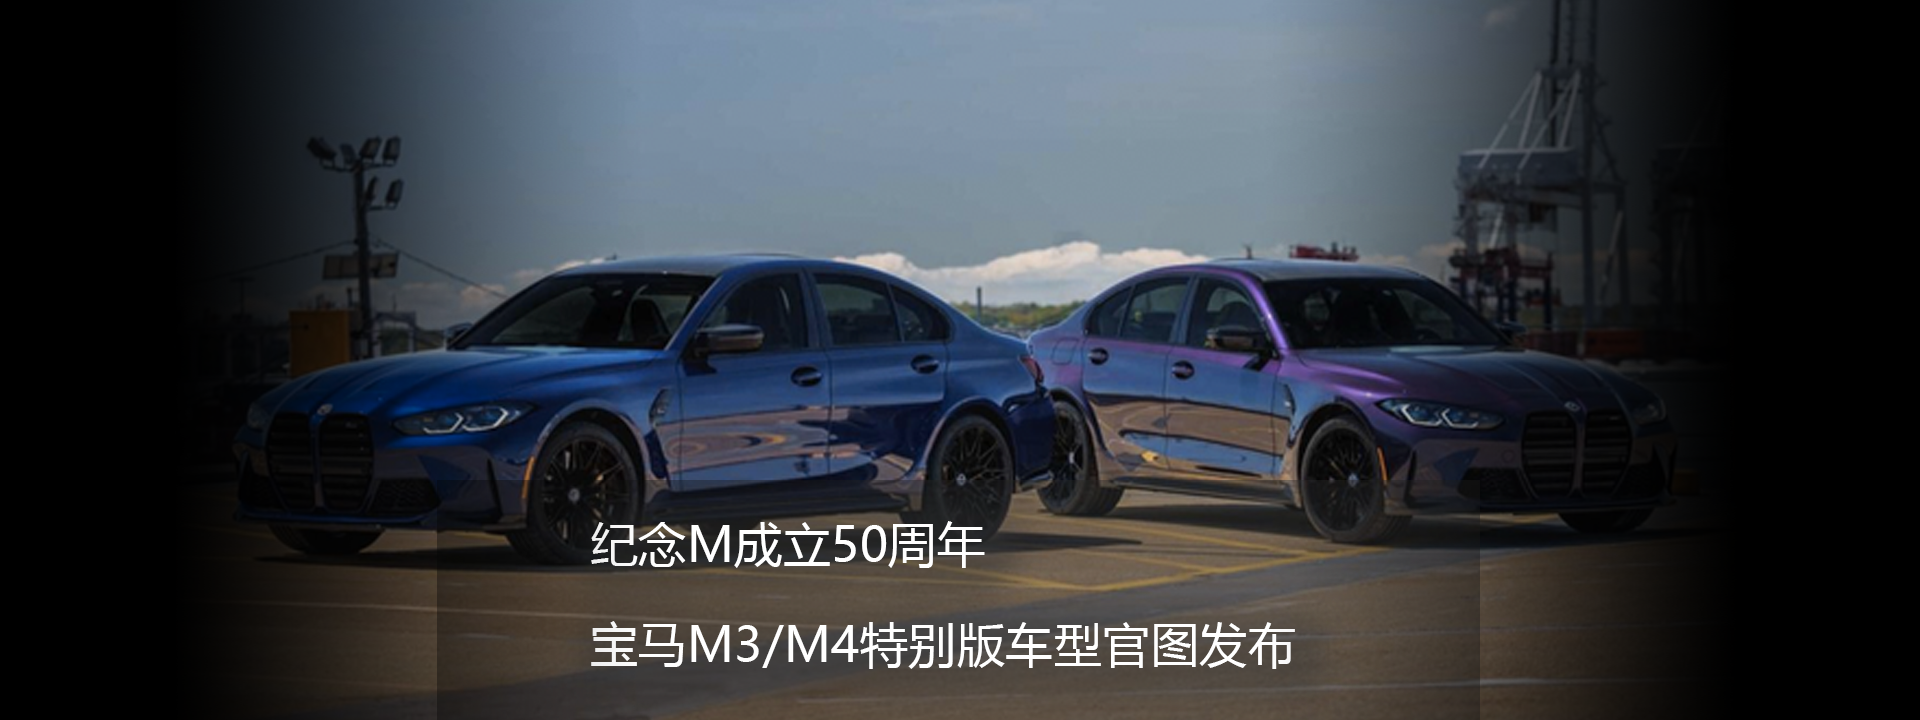 纪念M成立50周年 宝马M3/M4特别版车型官图发布